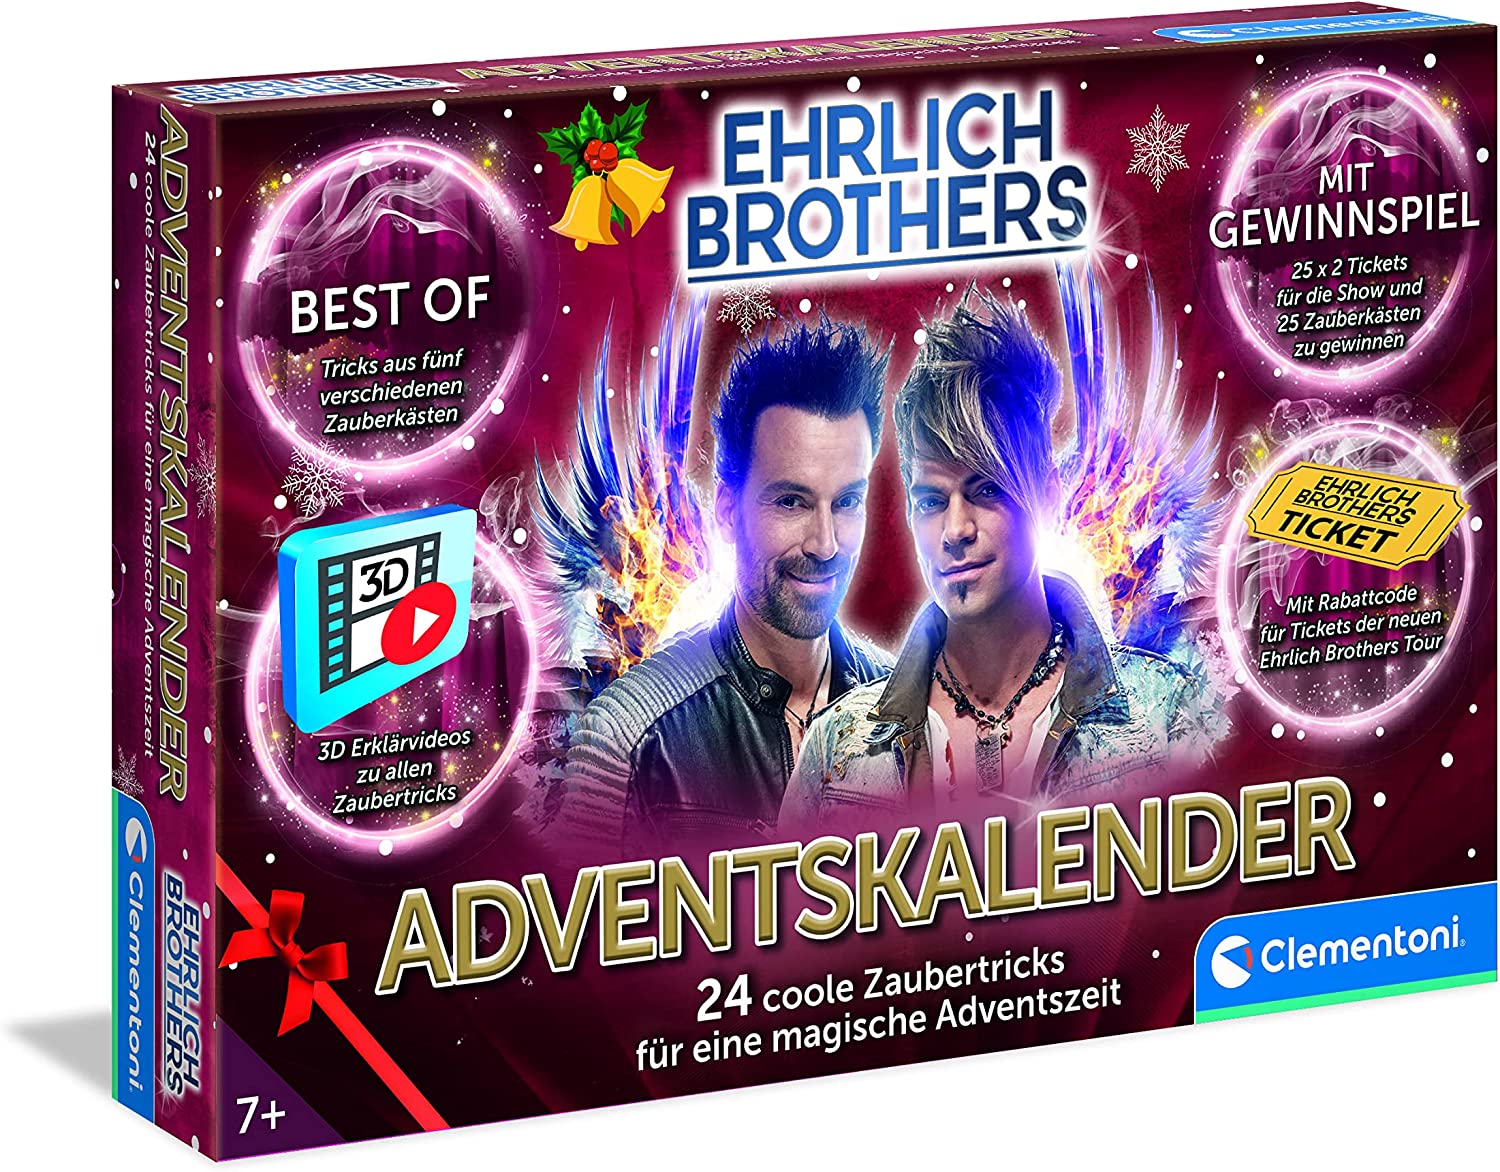 Ehrlich Brothers Adventskalender 2022, magischer Weihnachtskalender, mit 24 coolen Zaubertricks, Zauberkasten für Kinder ab 7 Jahren von Clementoni 59298